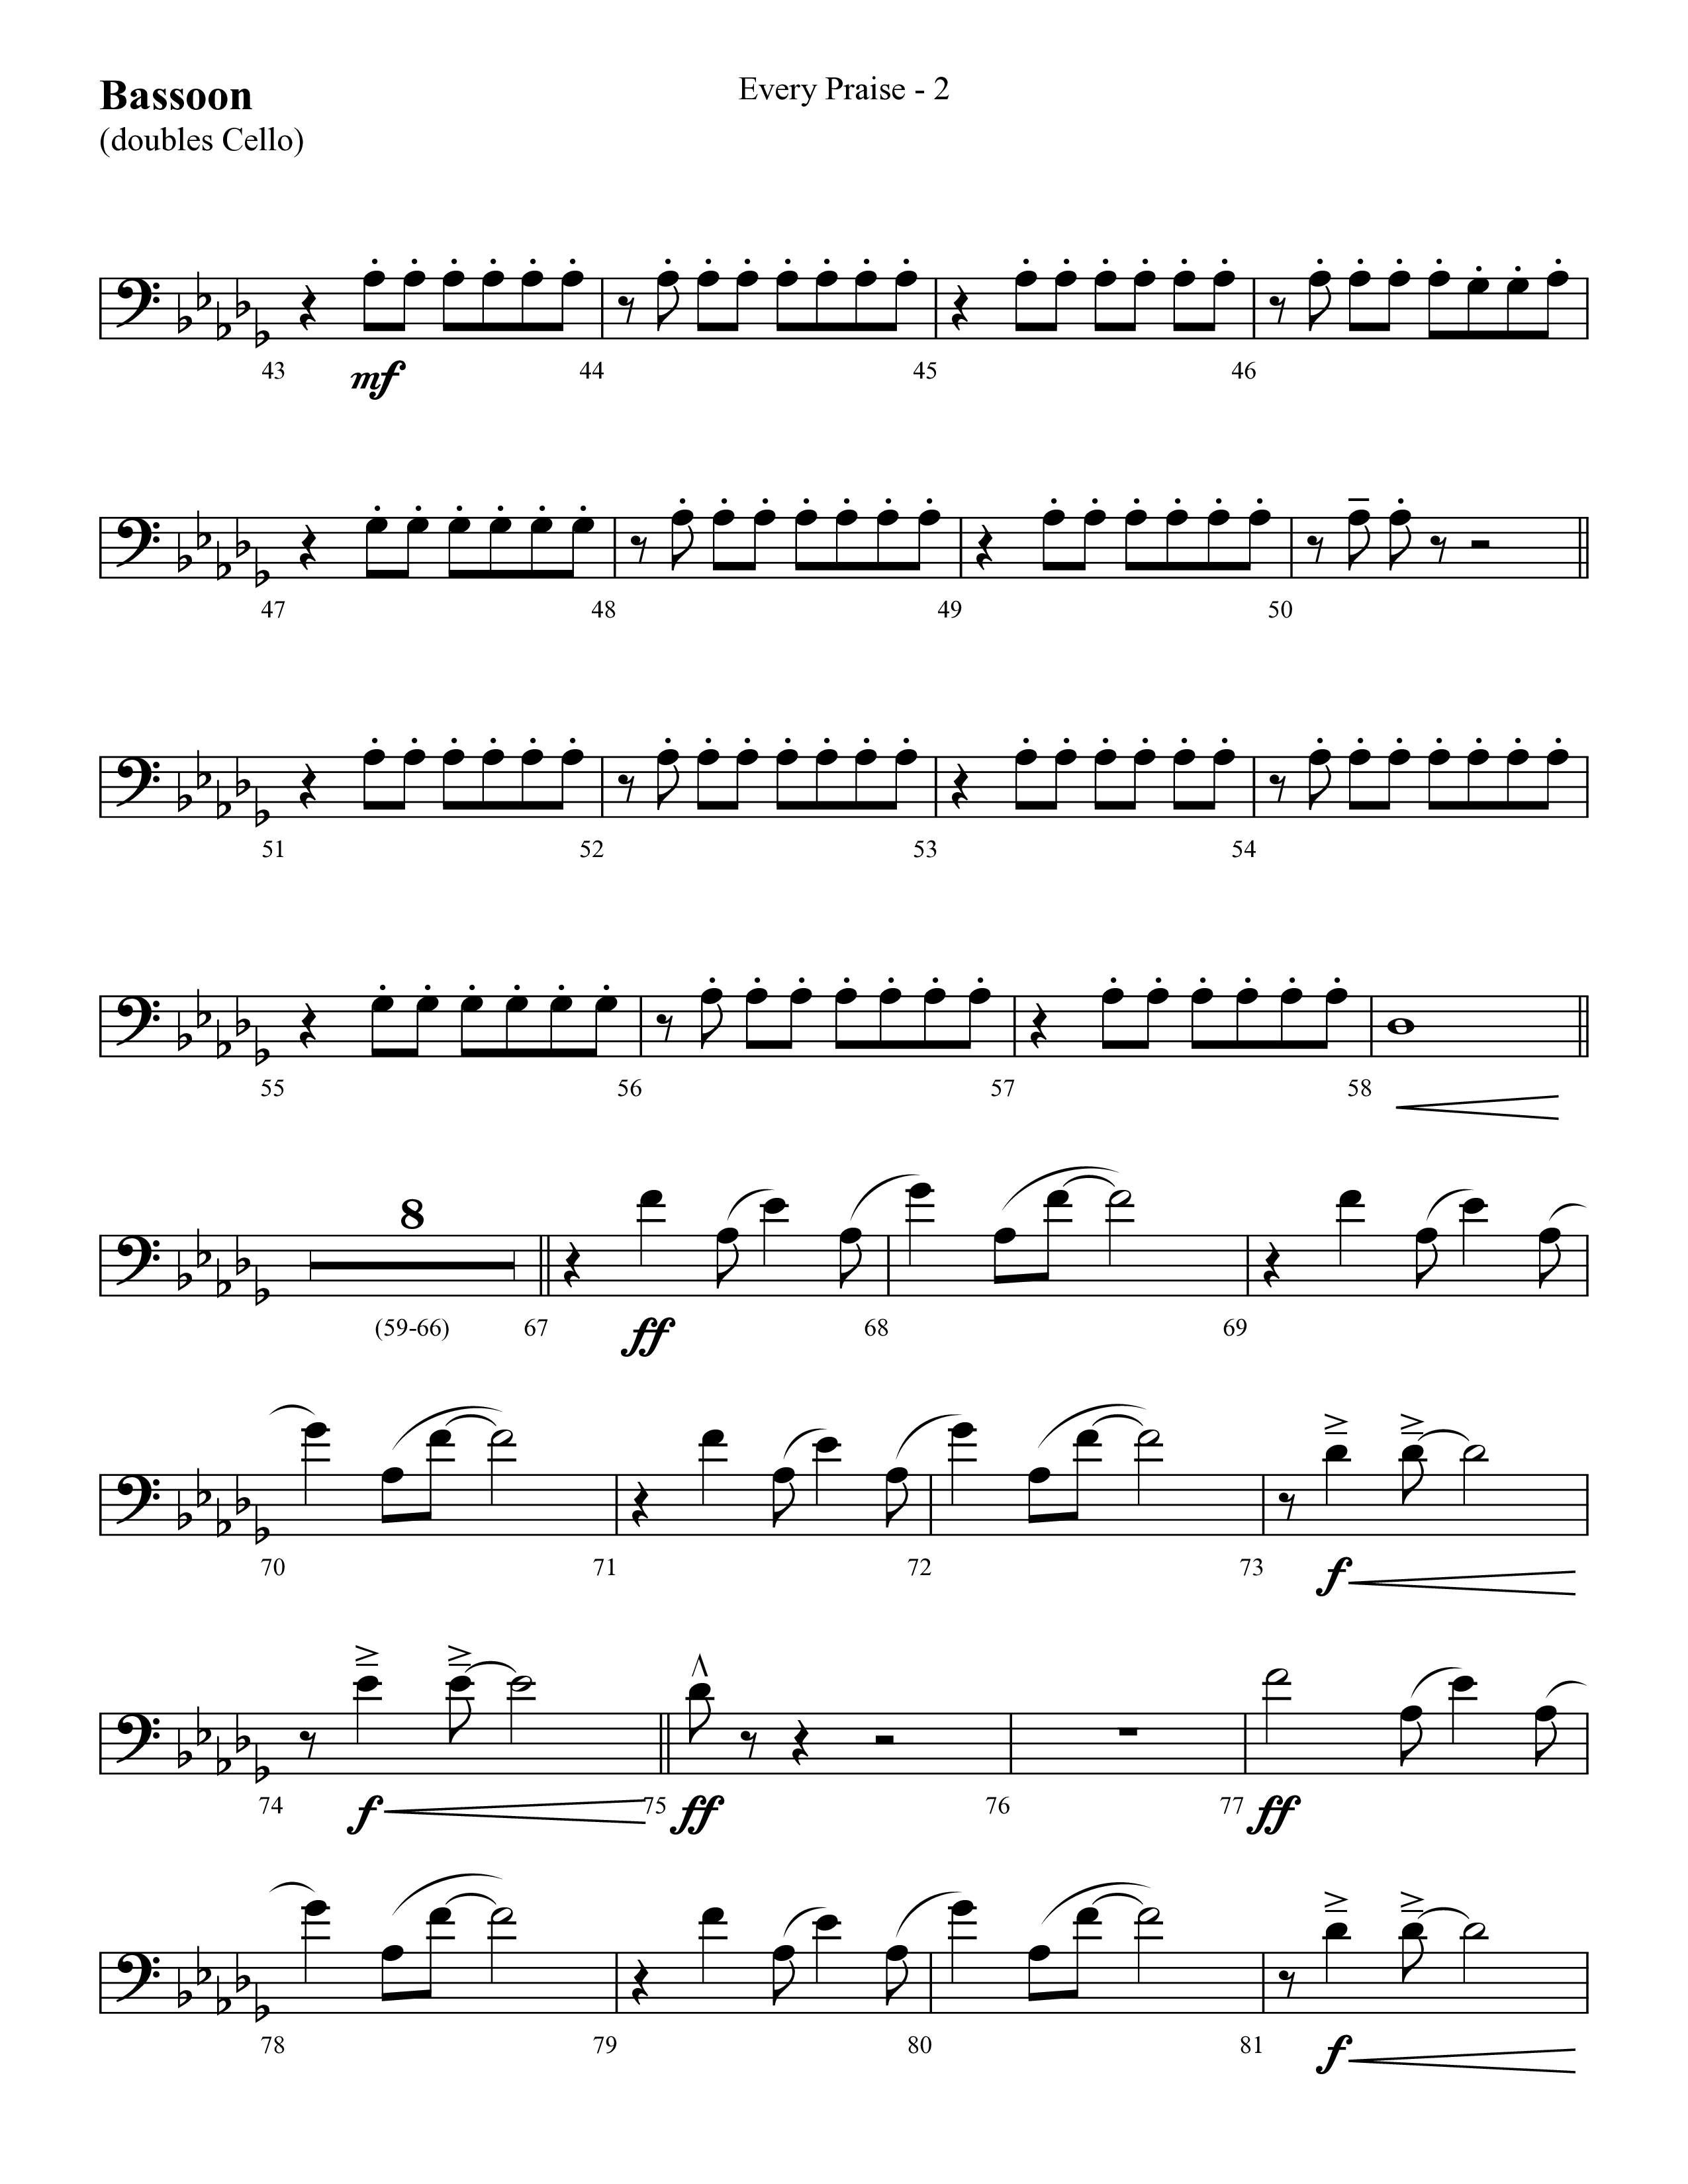 Every Praise Alto Sax Sheet Music PDF (Hezekiah Walker) - PraiseCharts